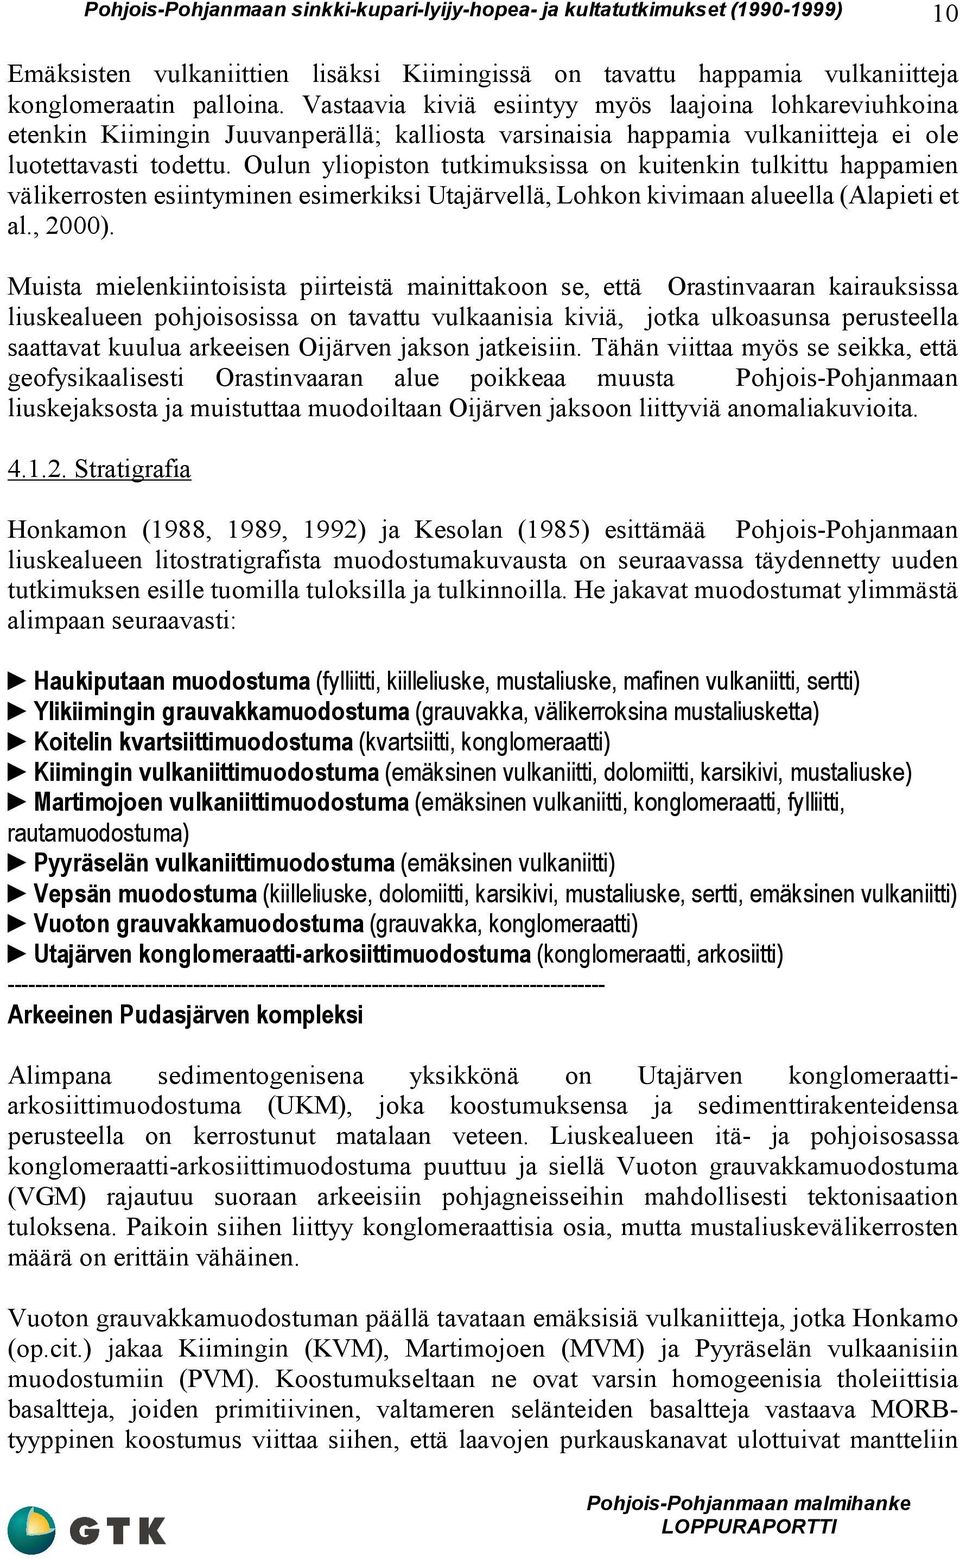 Oulun yliopiston tutkimuksissa on kuitenkin tulkittu happamien välikerrosten esiintyminen esimerkiksi Utajärvellä, Lohkon kivimaan alueella (Alapieti et al., 2000).